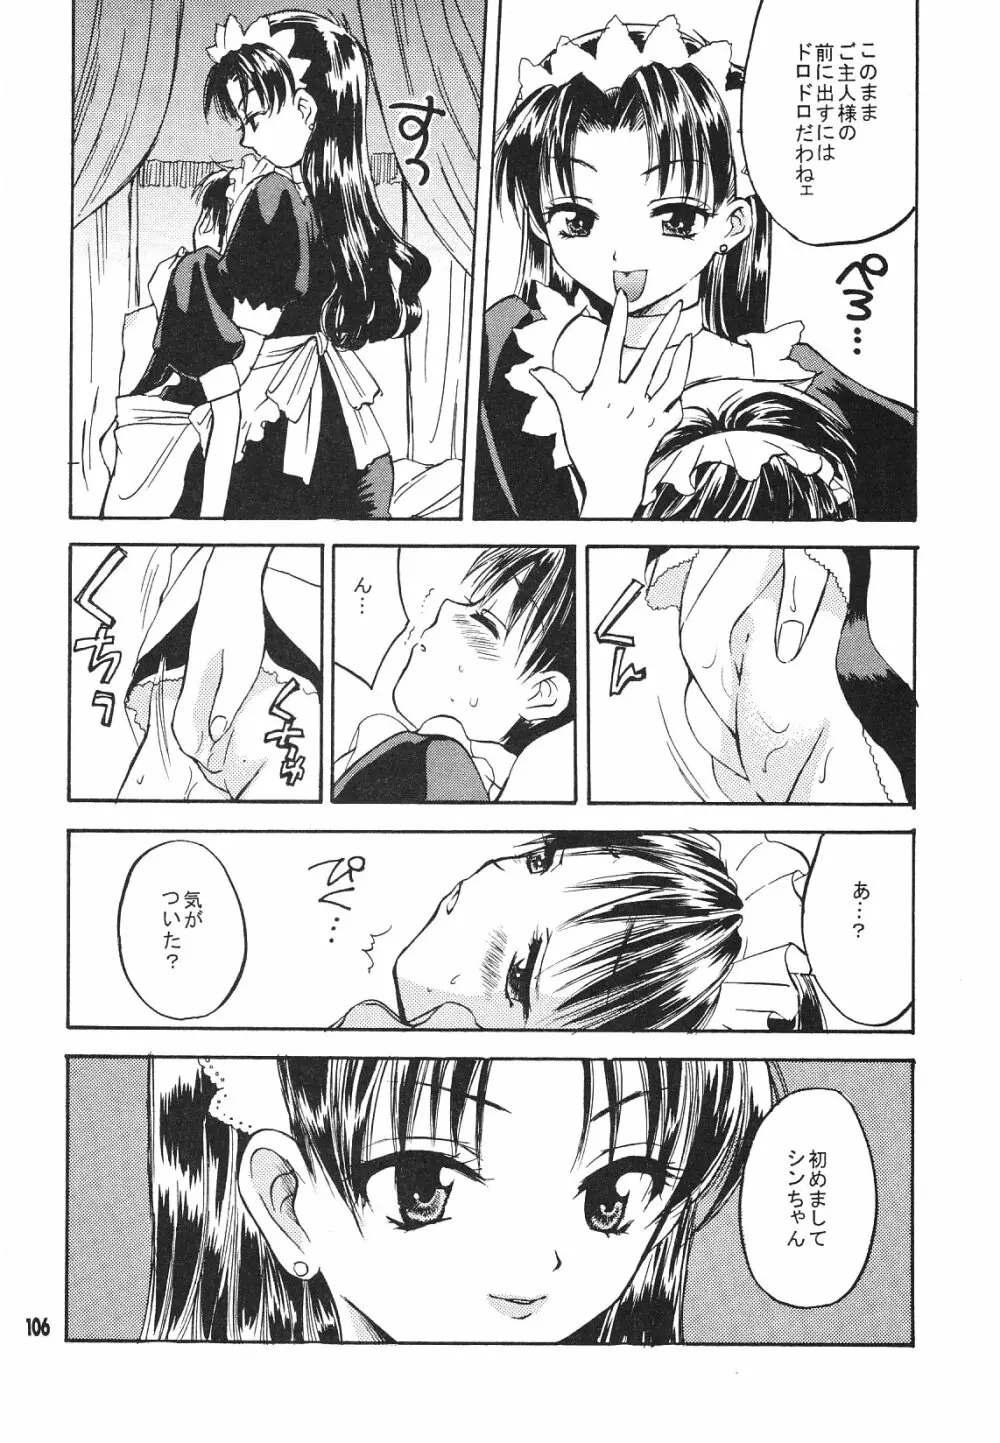 Maniac Juice 女シンジ再録集 '96-'99 - page106